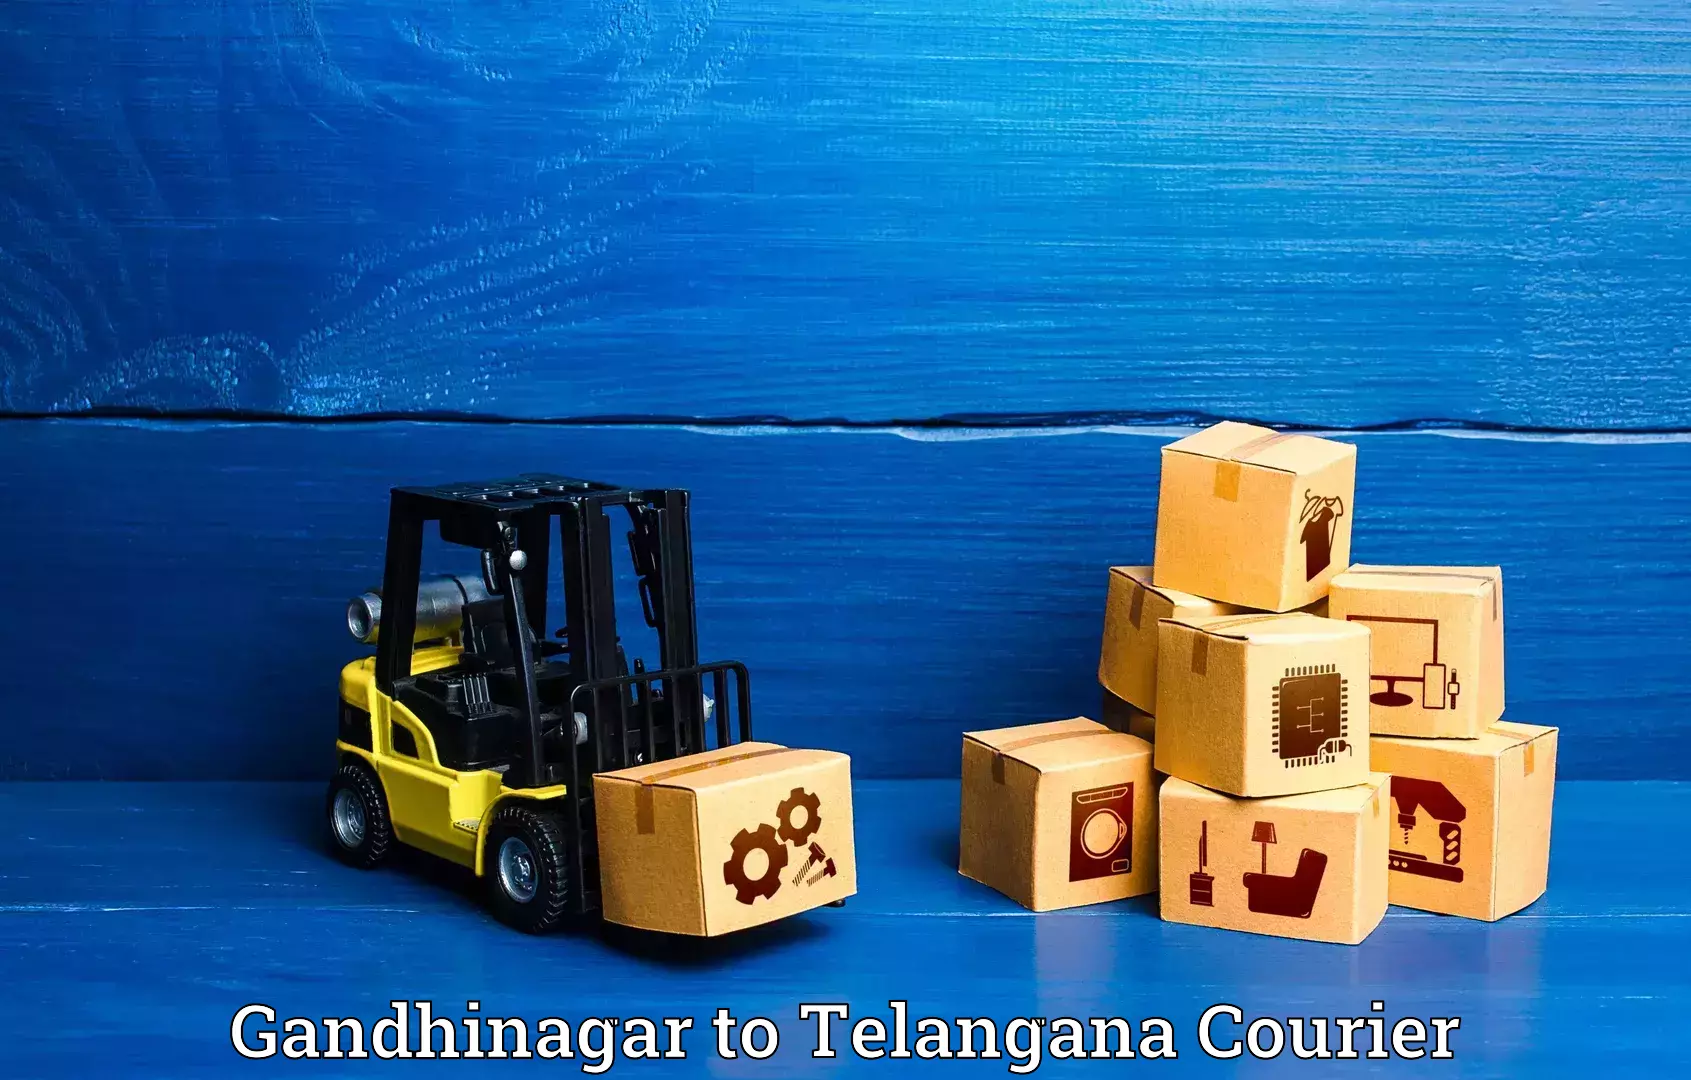 Luggage delivery app Gandhinagar to Kothakota